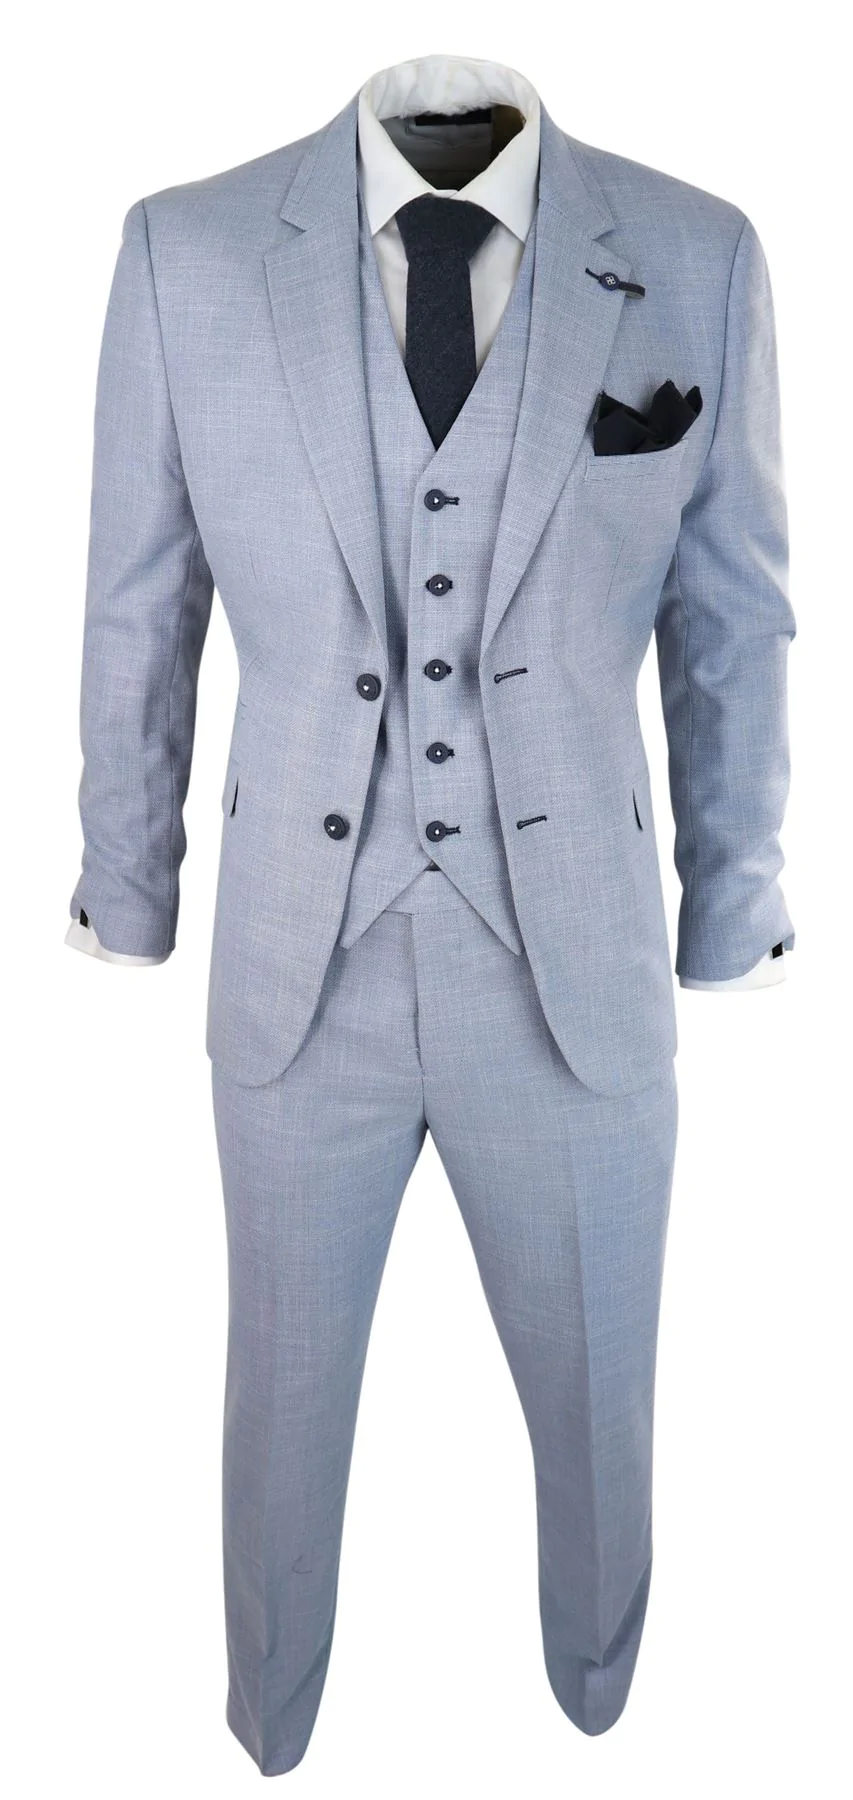 Men's Solid Light Blue Summer Linen Suit Two Piece Slim Fit Suit coat Pant  - Etsy